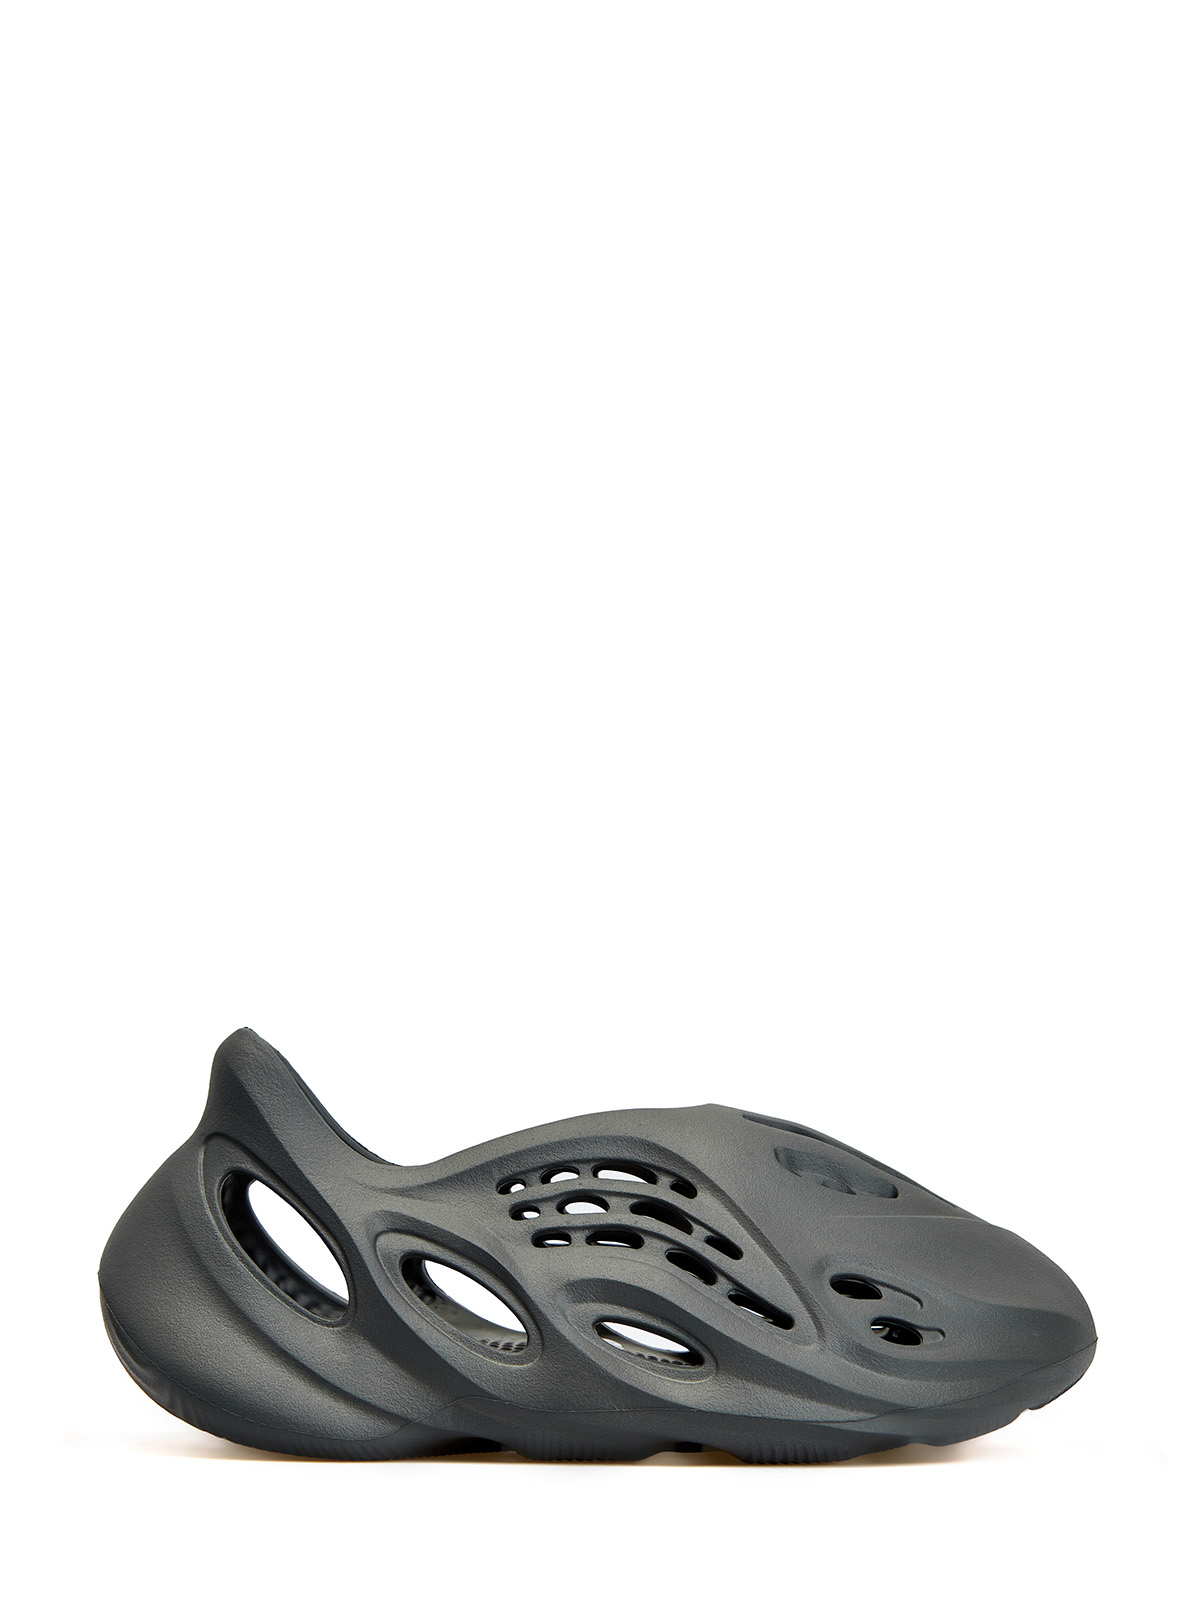 Кроссовки Yeezy Foam Runner 'Carbon' Yeezy, цвет черный, размер 40.5 - фото 1